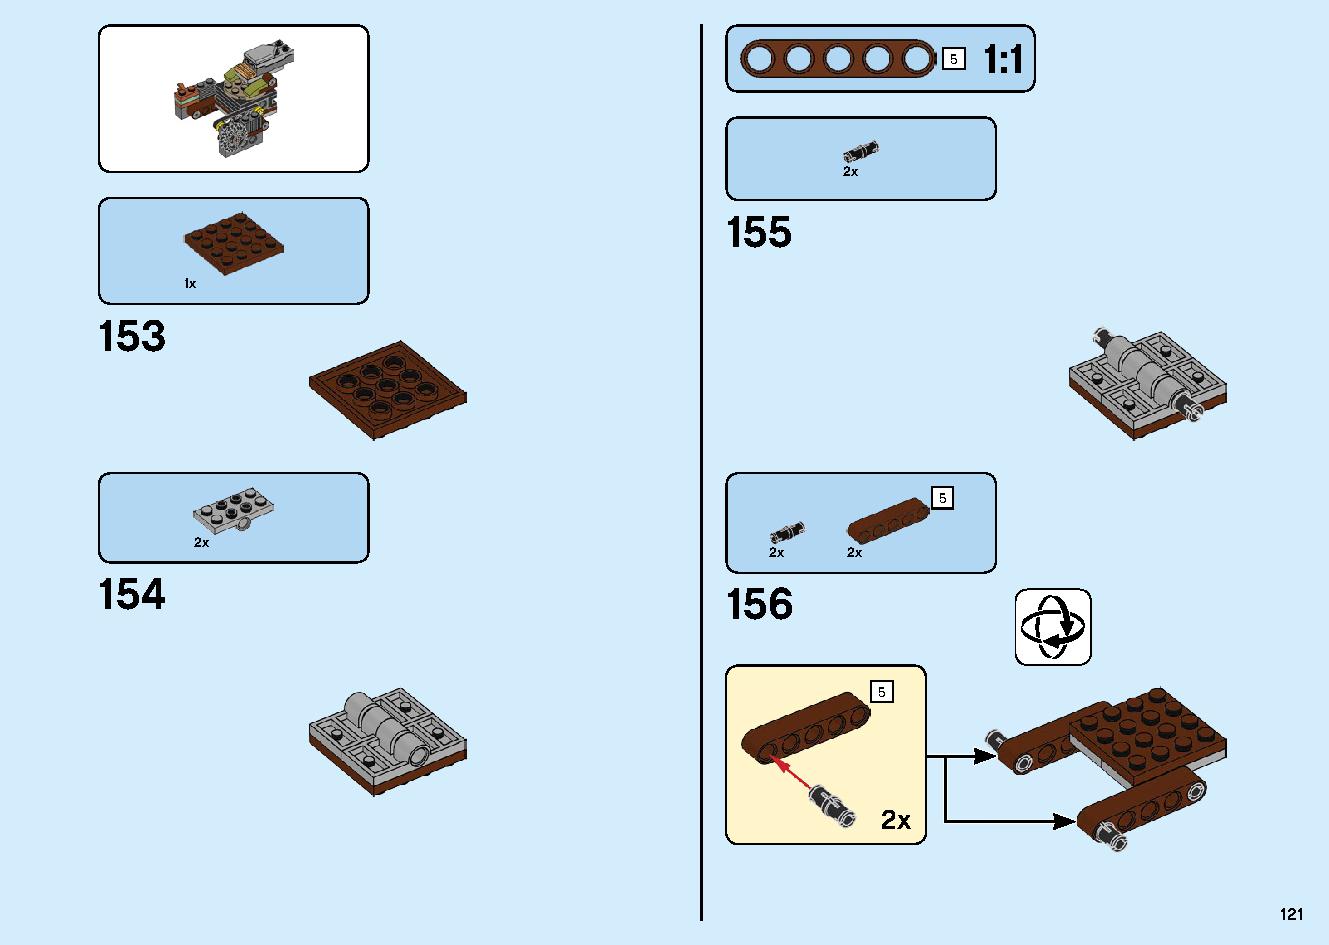 陸上戦艦バウンティ号 70677 レゴの商品情報 レゴの説明書・組立方法 121 page